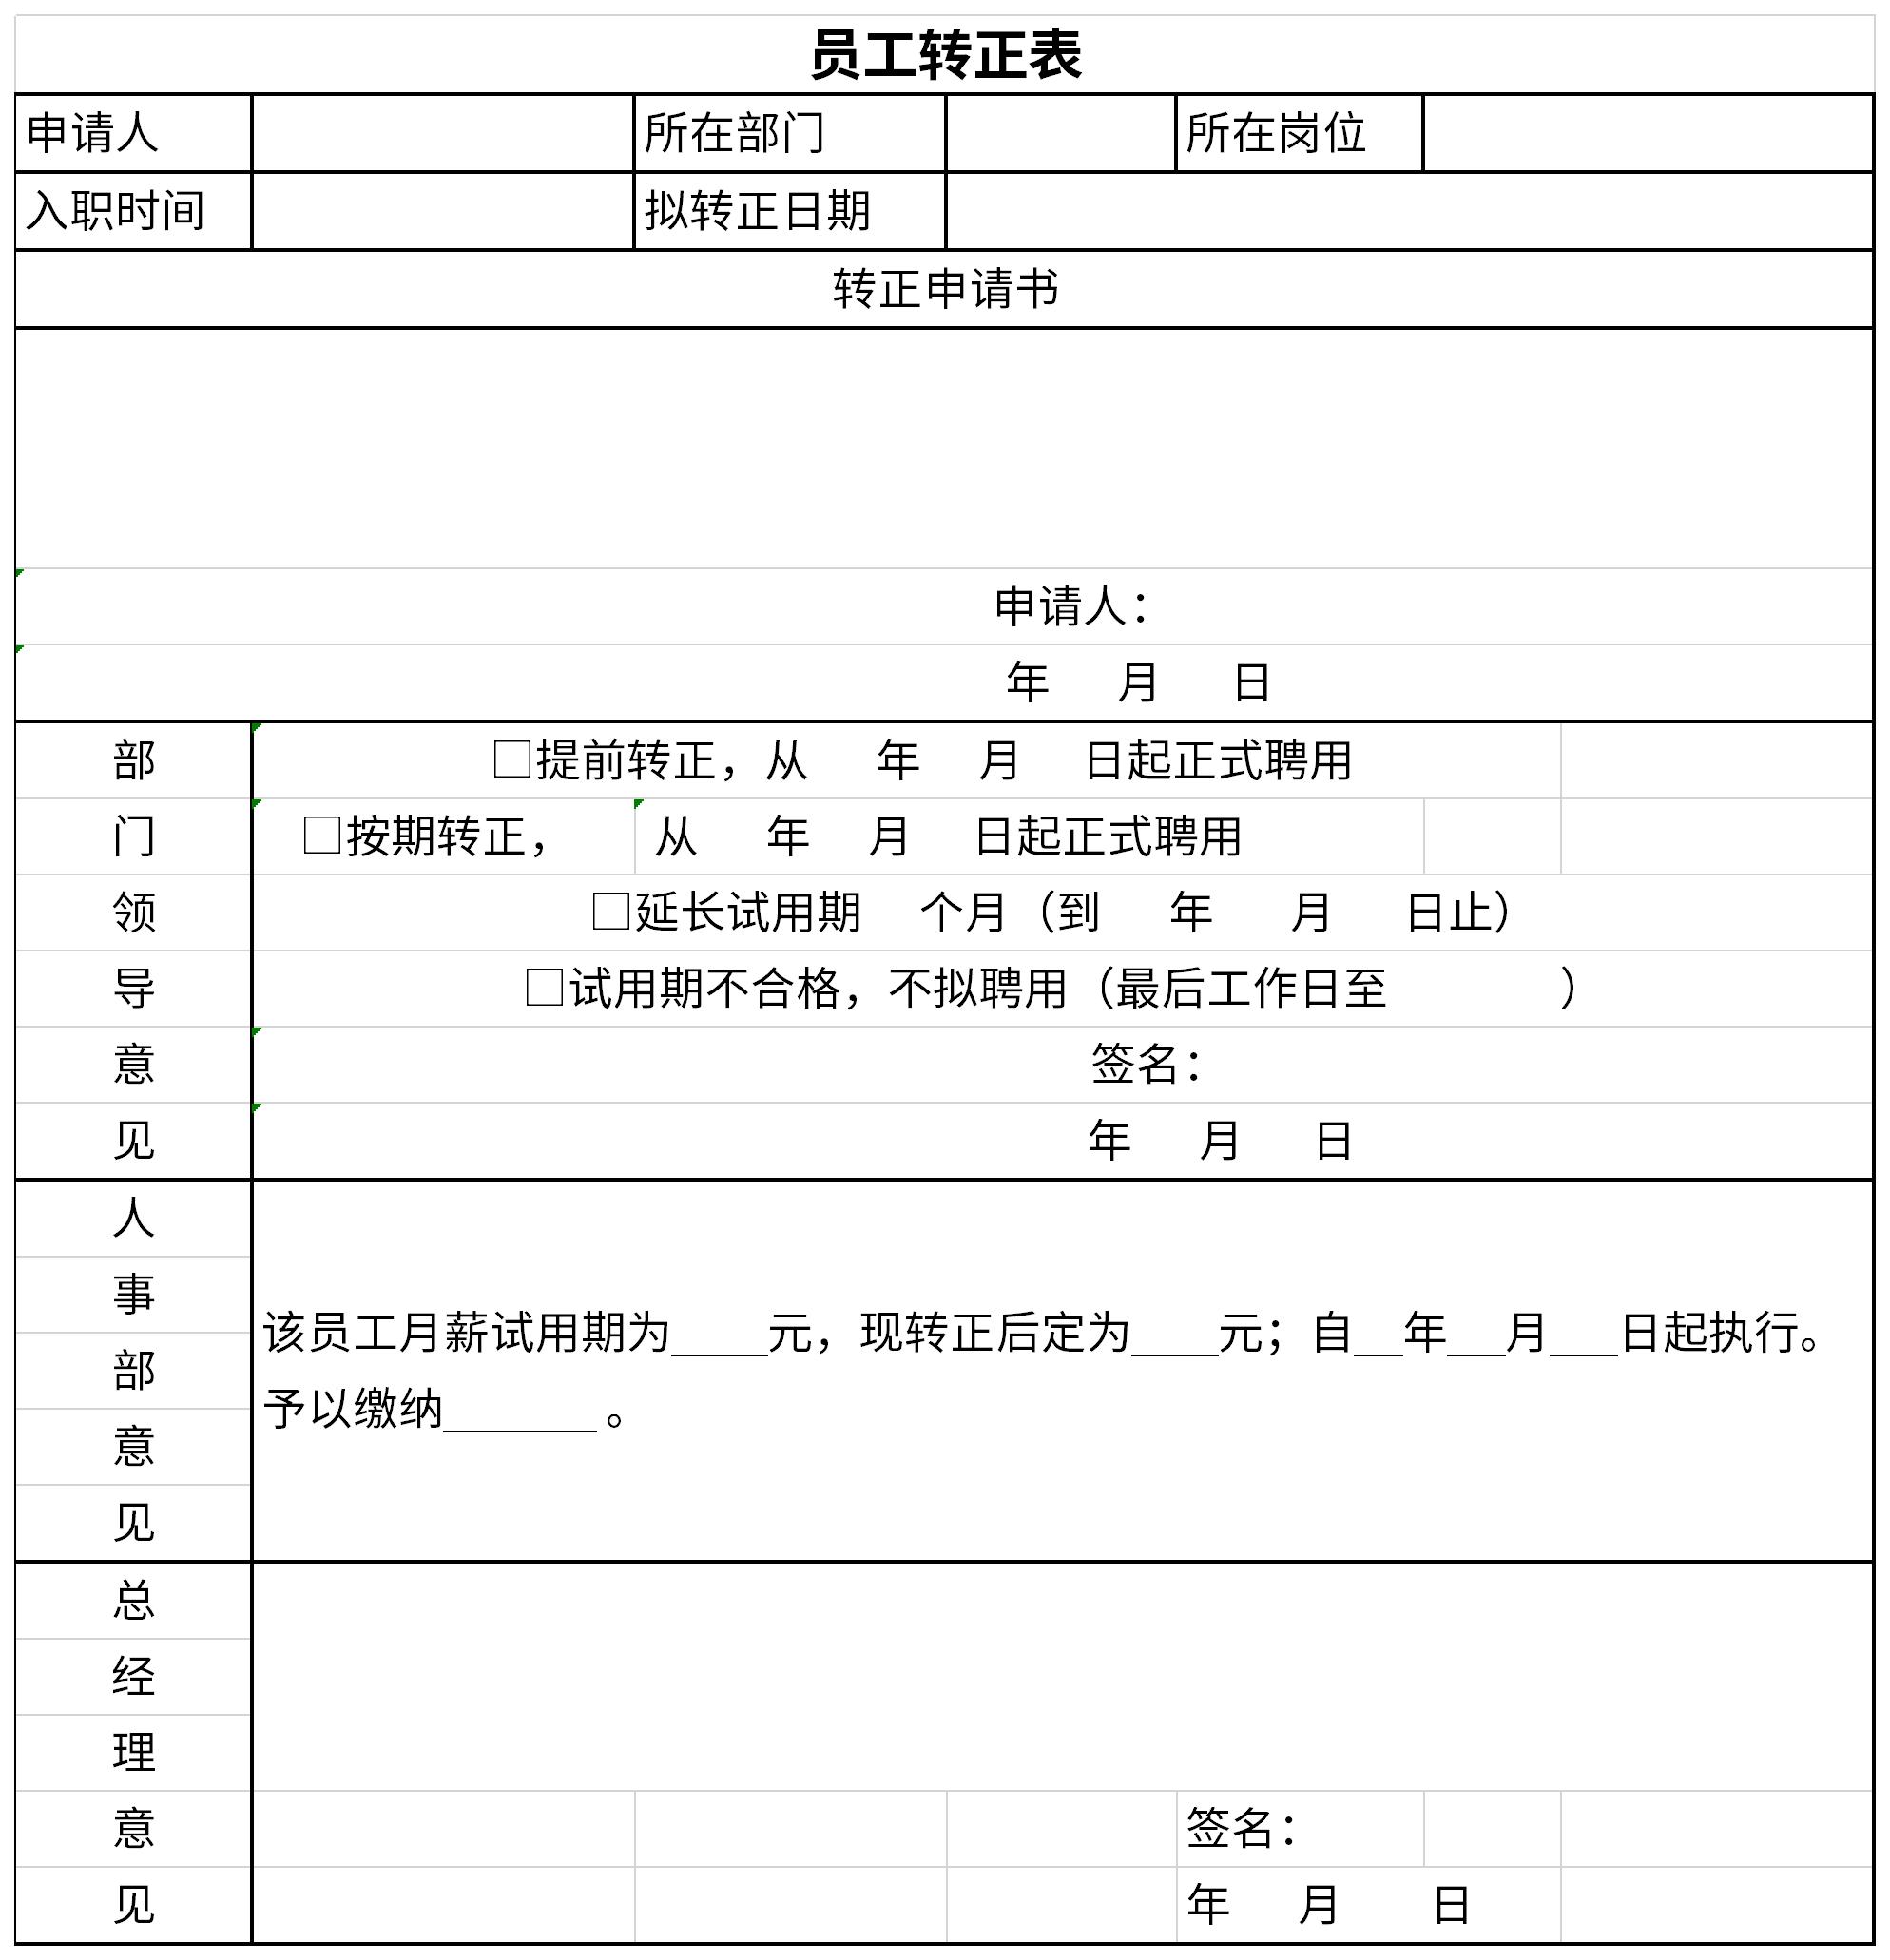 河南省2020年度卫生系列高级职称评审简表-考试宝典